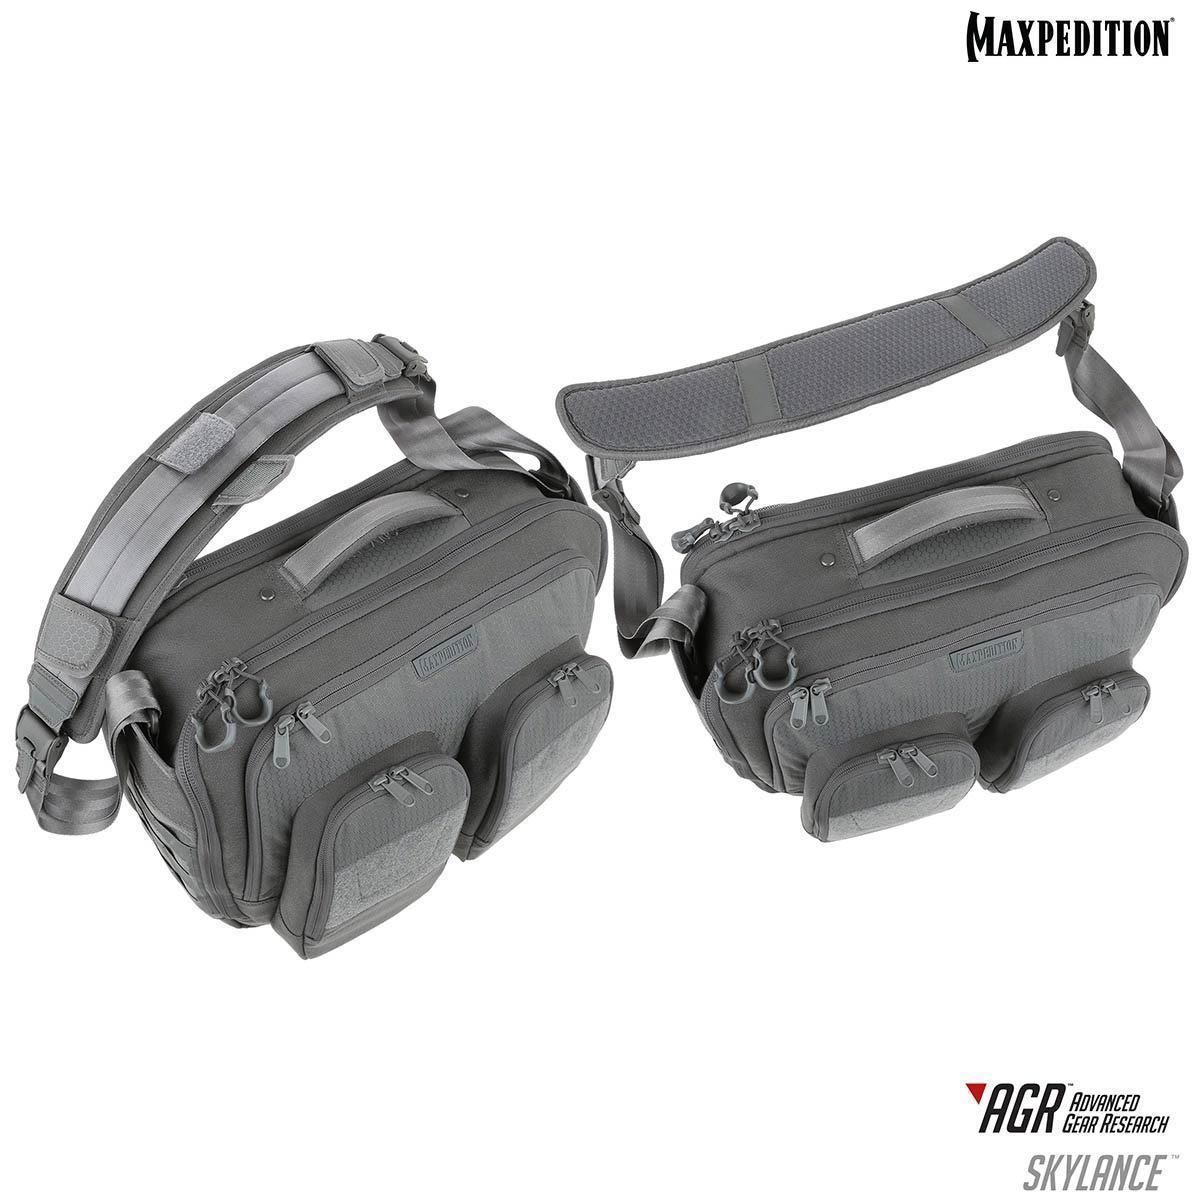 Maxpedition Skylance Tech Gear Bag 28L Tactical Distributors Ltd New Zealand